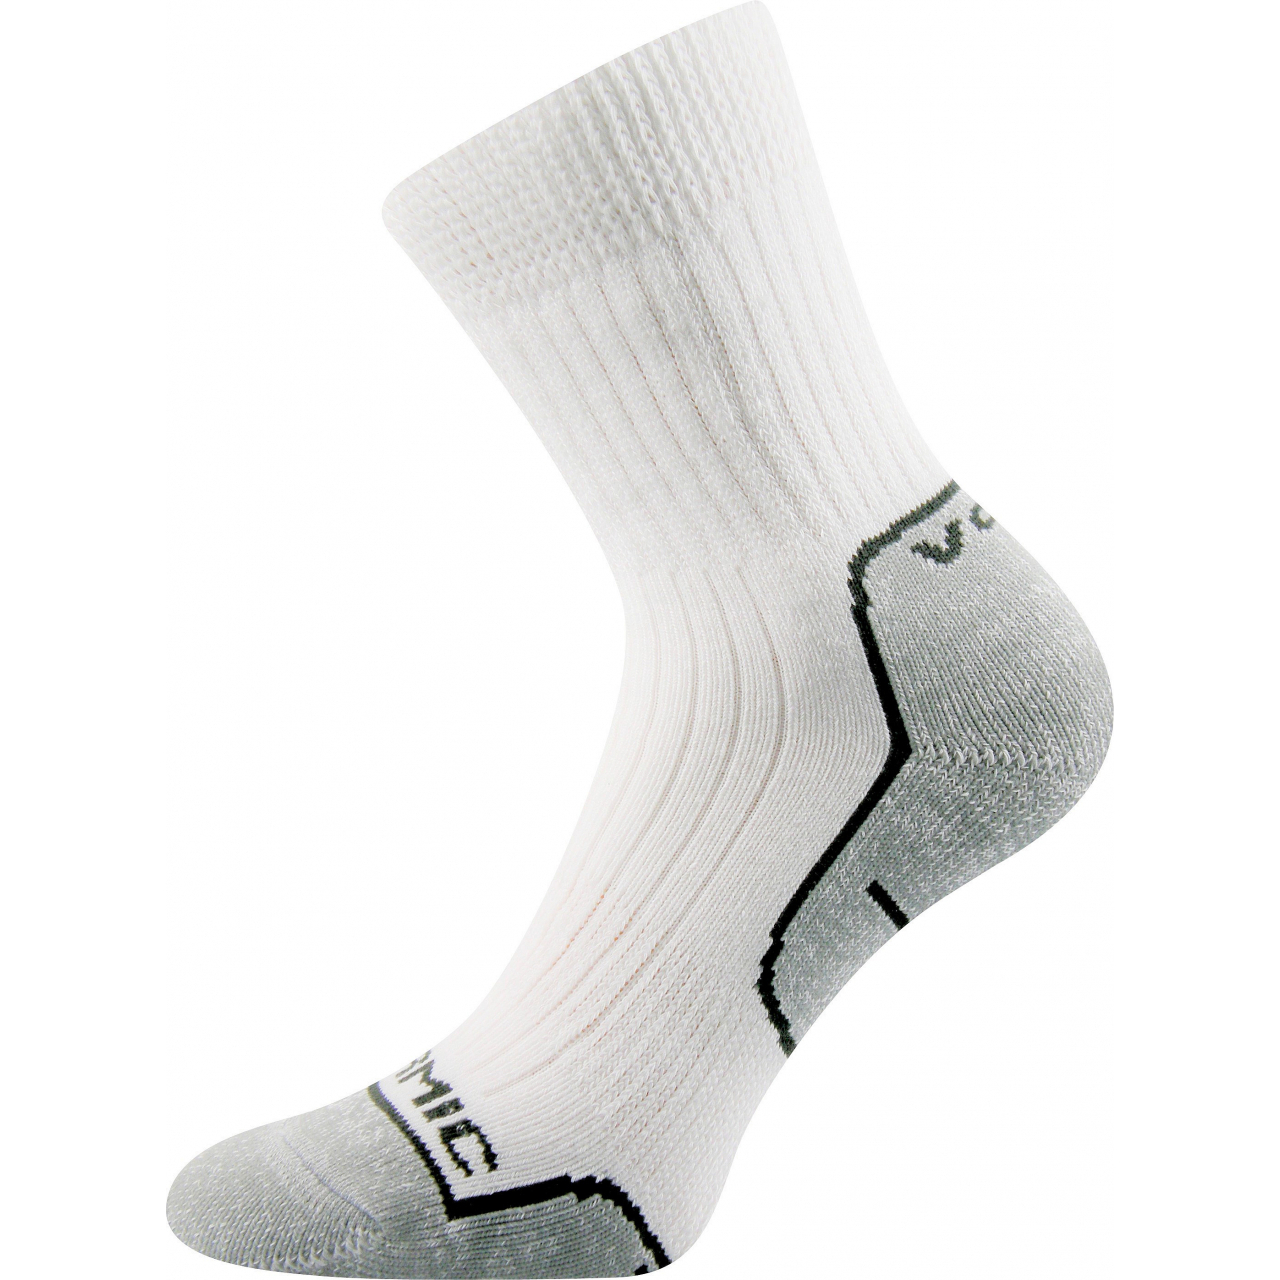 Ponožky unisex termo Voxx Zenith L + P - bílé-šedé, 38-39